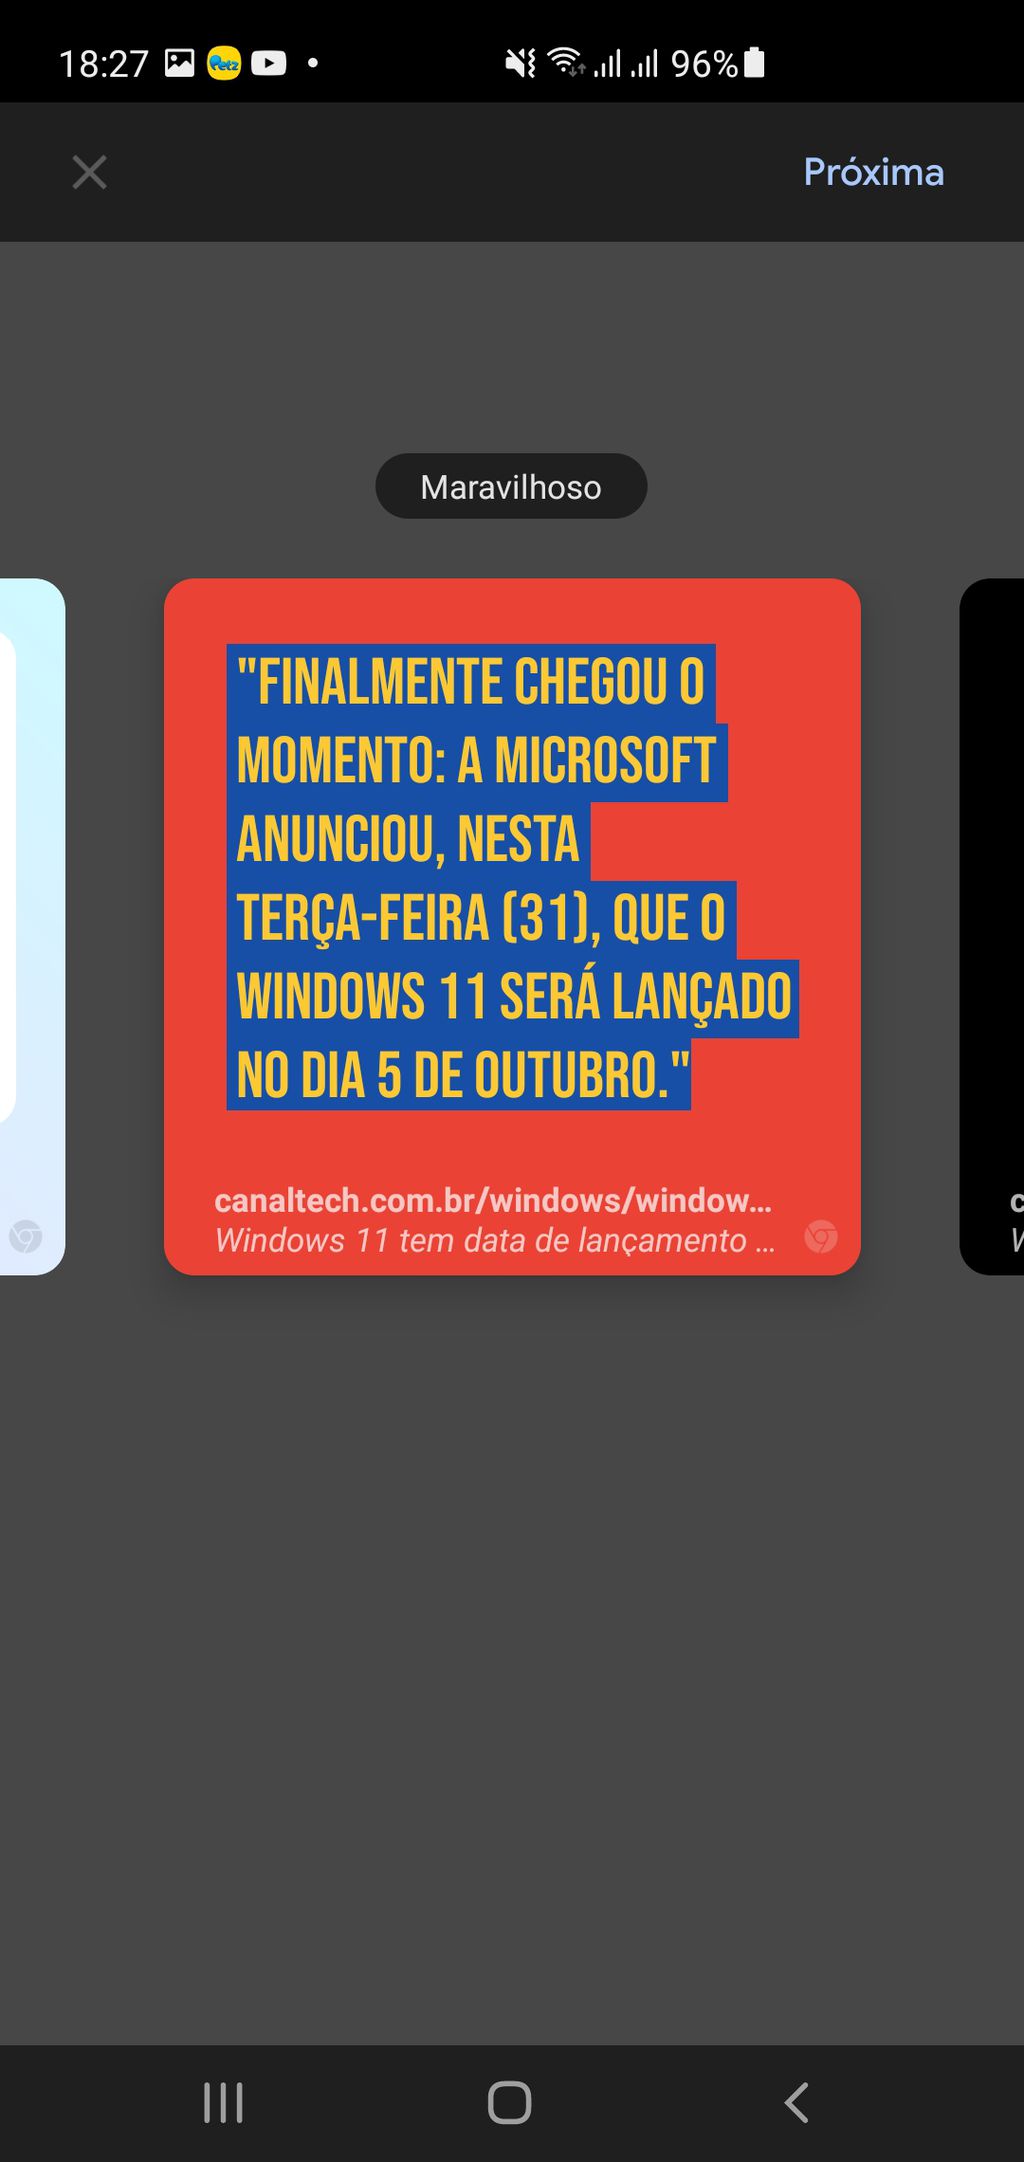 Os cards personalizados deixam o trecho do artigo prontos para estampar um post novo nas redes sociais (Captura: Alveni Lisboa/Canaltech)